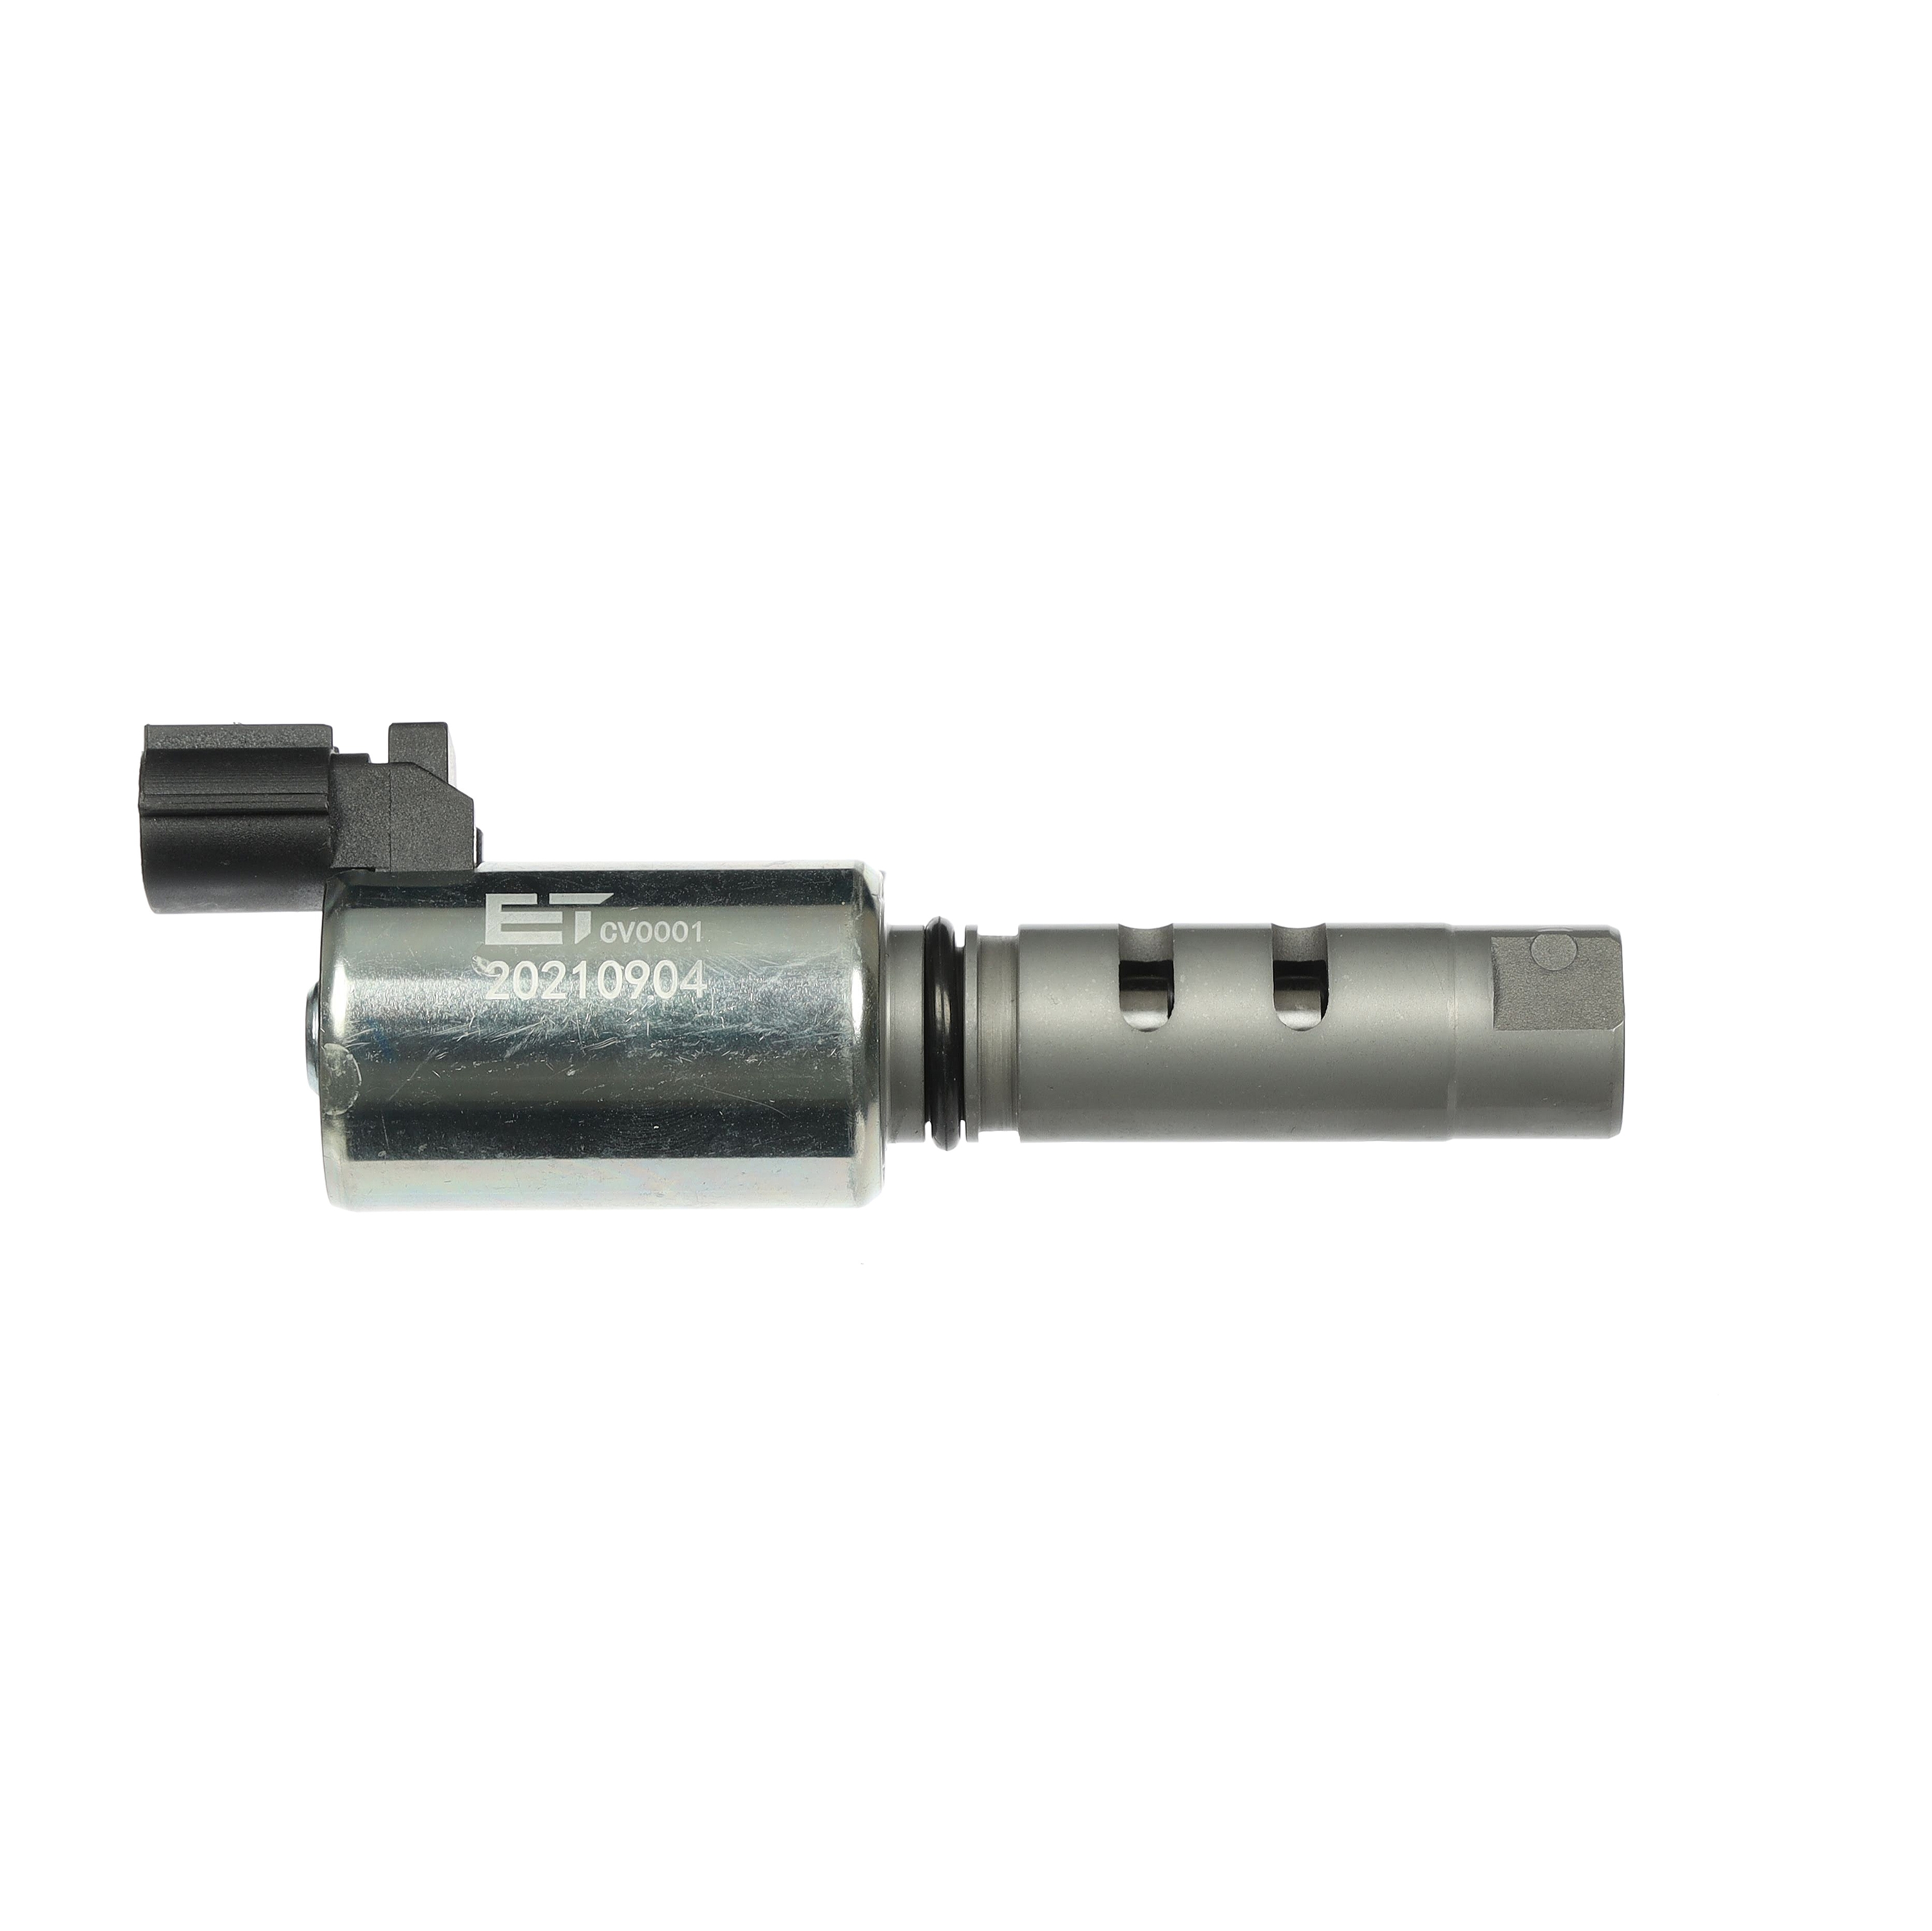 Control valve, camshaft adjustment ET ENGINETEAM with seal ring - CV0001